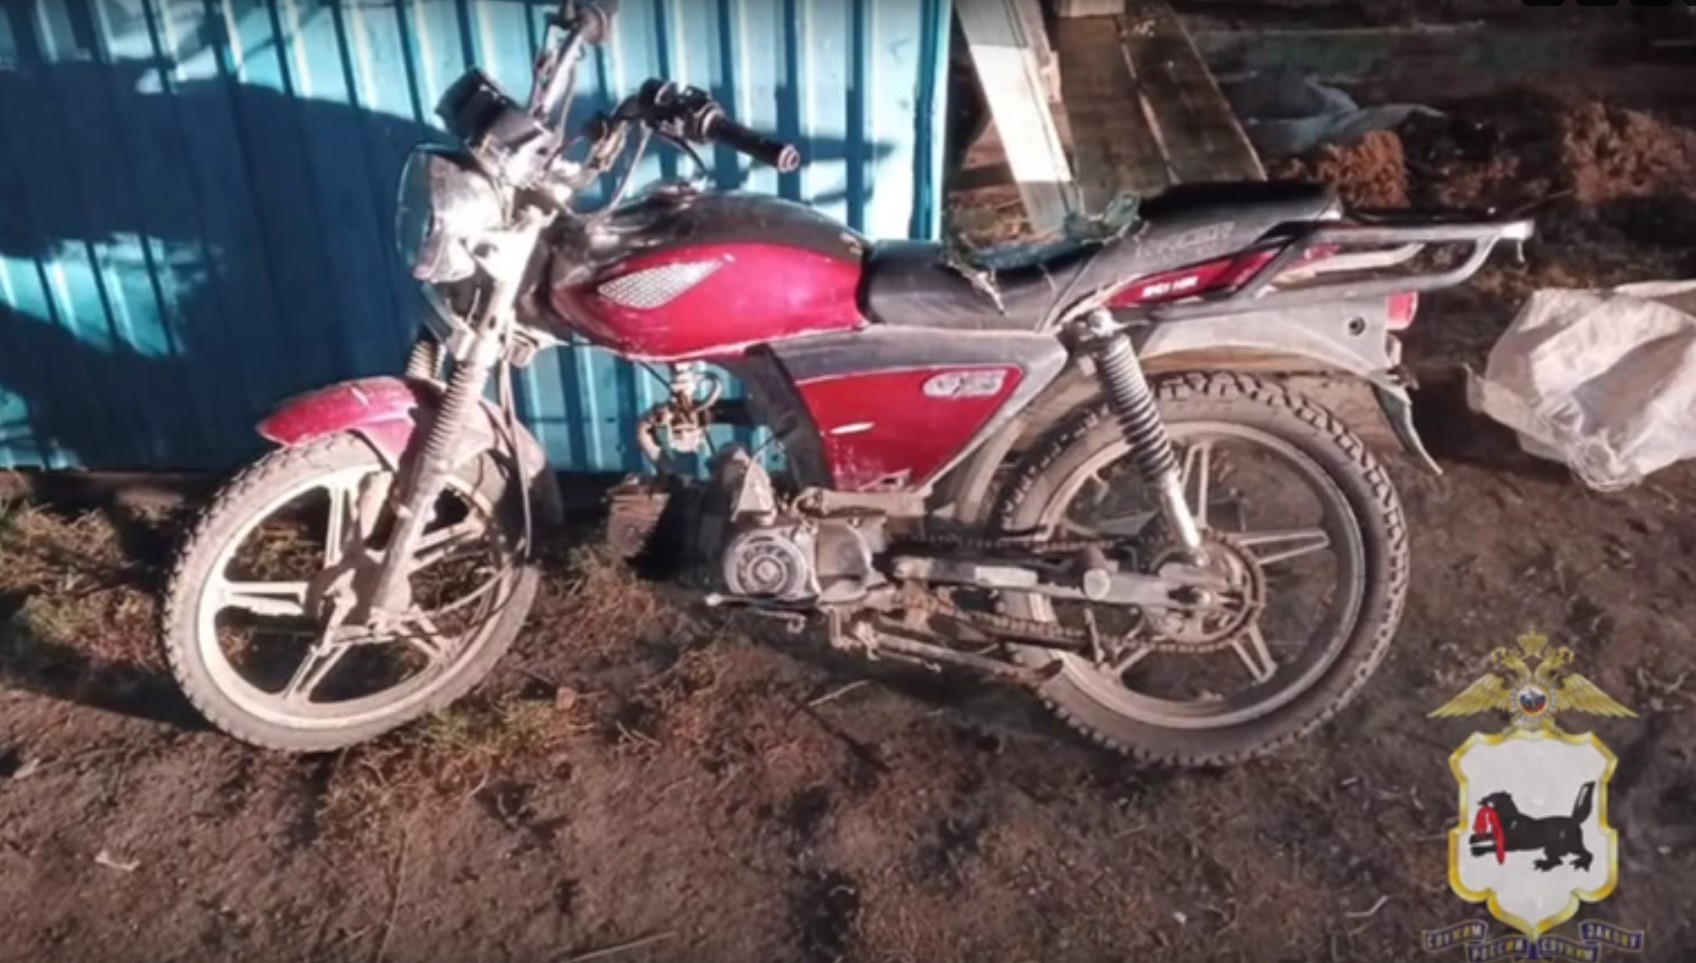 Нога школьника попала в спицы заднего колеса мотоцикла в Приангарье. Ребенок в больнице